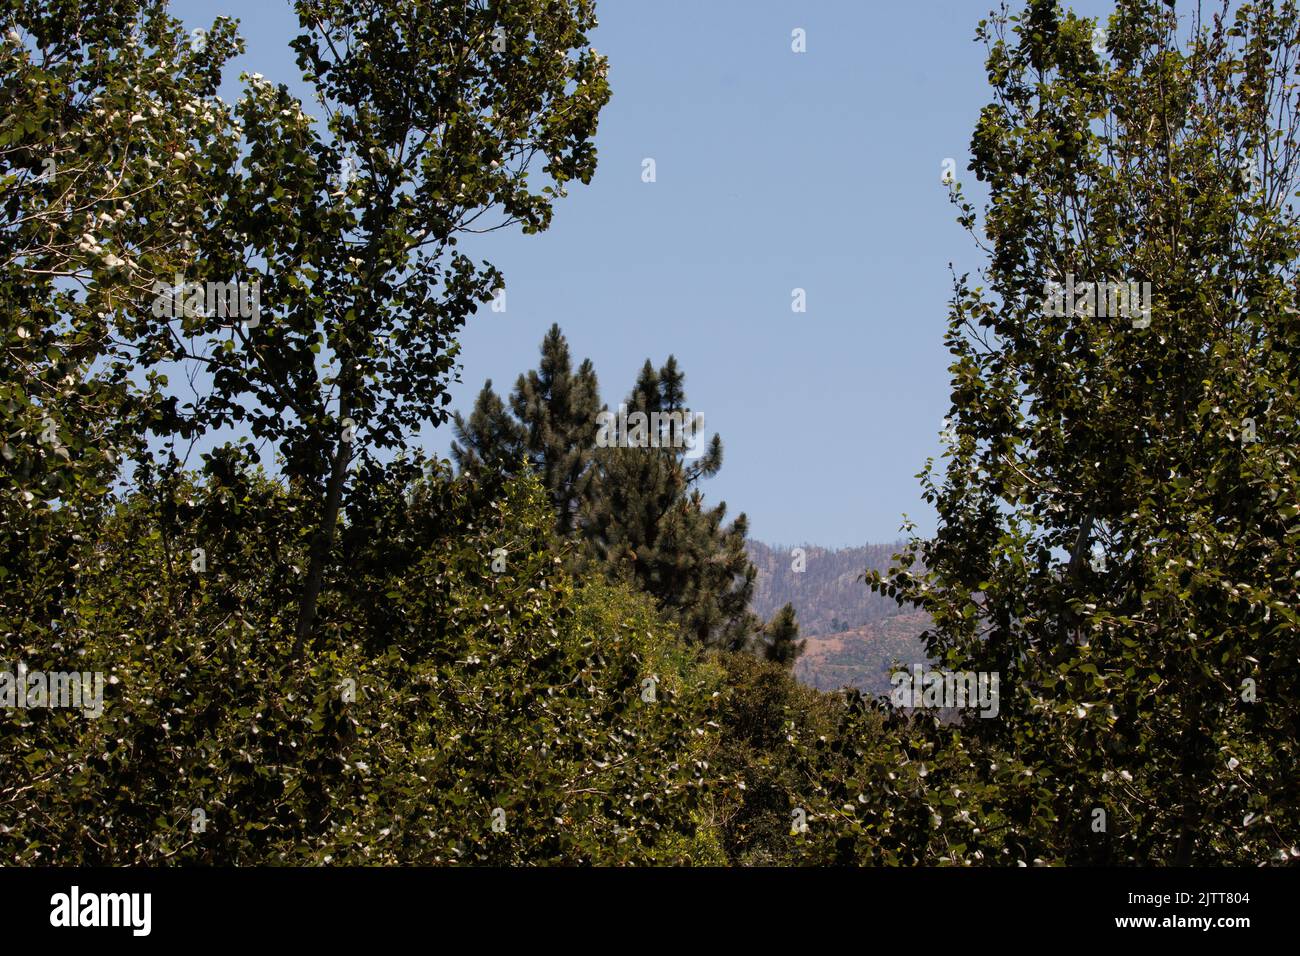 Un mélange de communautés végétales forestières riveraines, de chaparral inférieur et de montagne supérieur à 3000 pieds dans les montagnes San Bernardino, en été. Banque D'Images